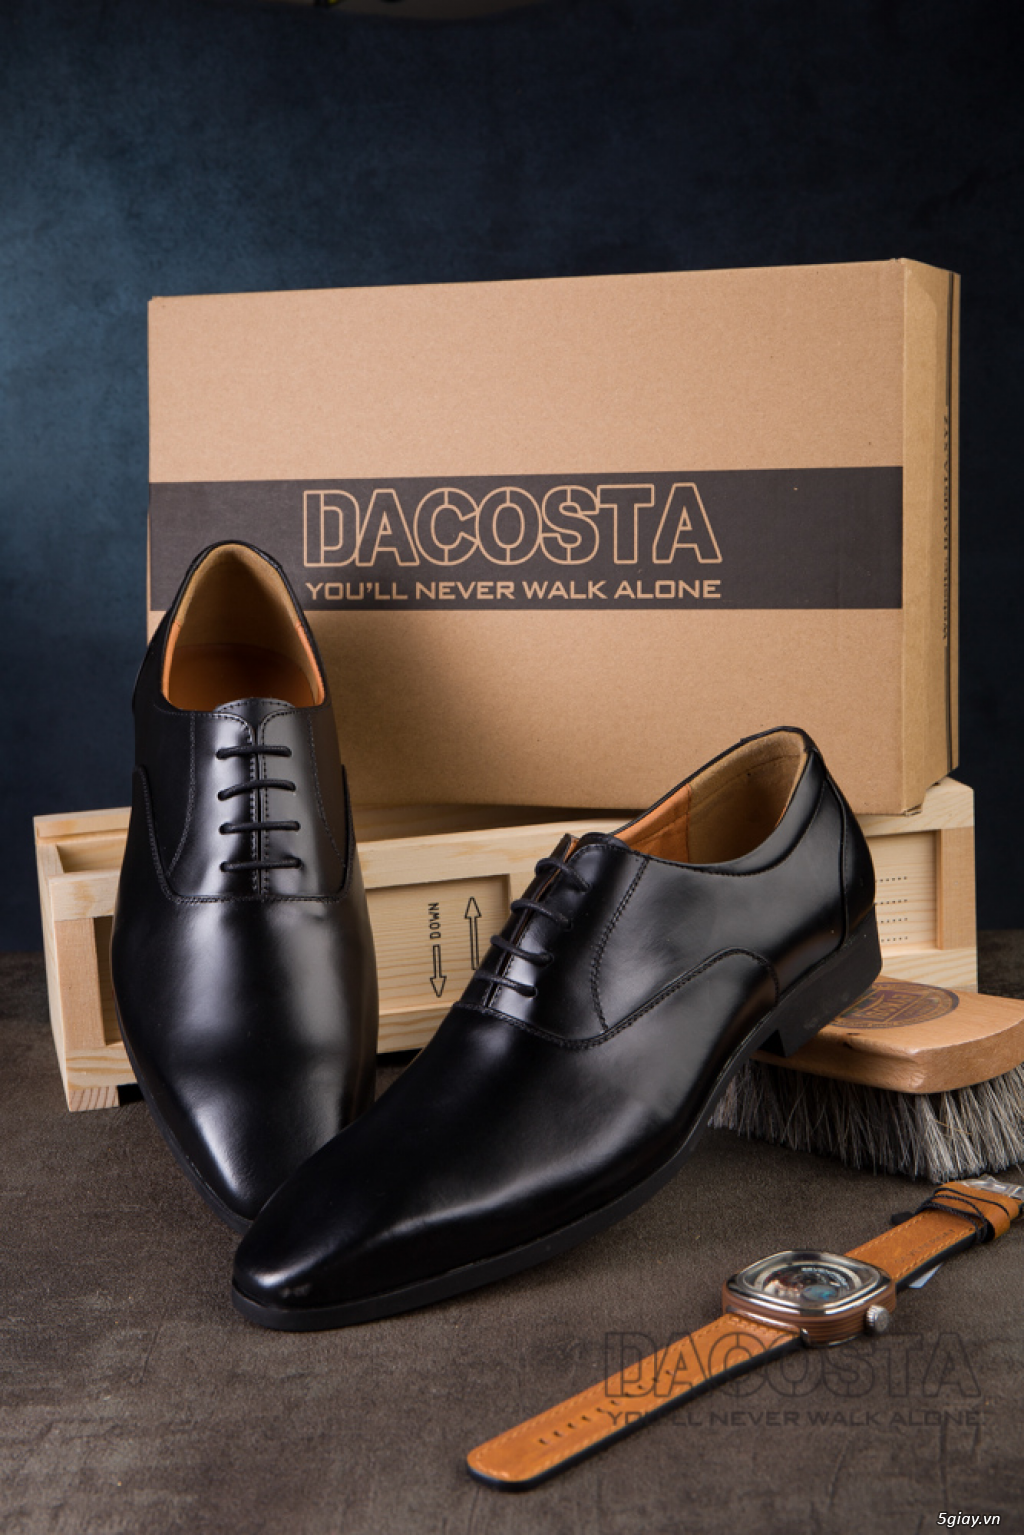 Tiệm Giày Dacosta - Những Mẫu Giày Tây Oxford Hot Nhất 2019 - 3